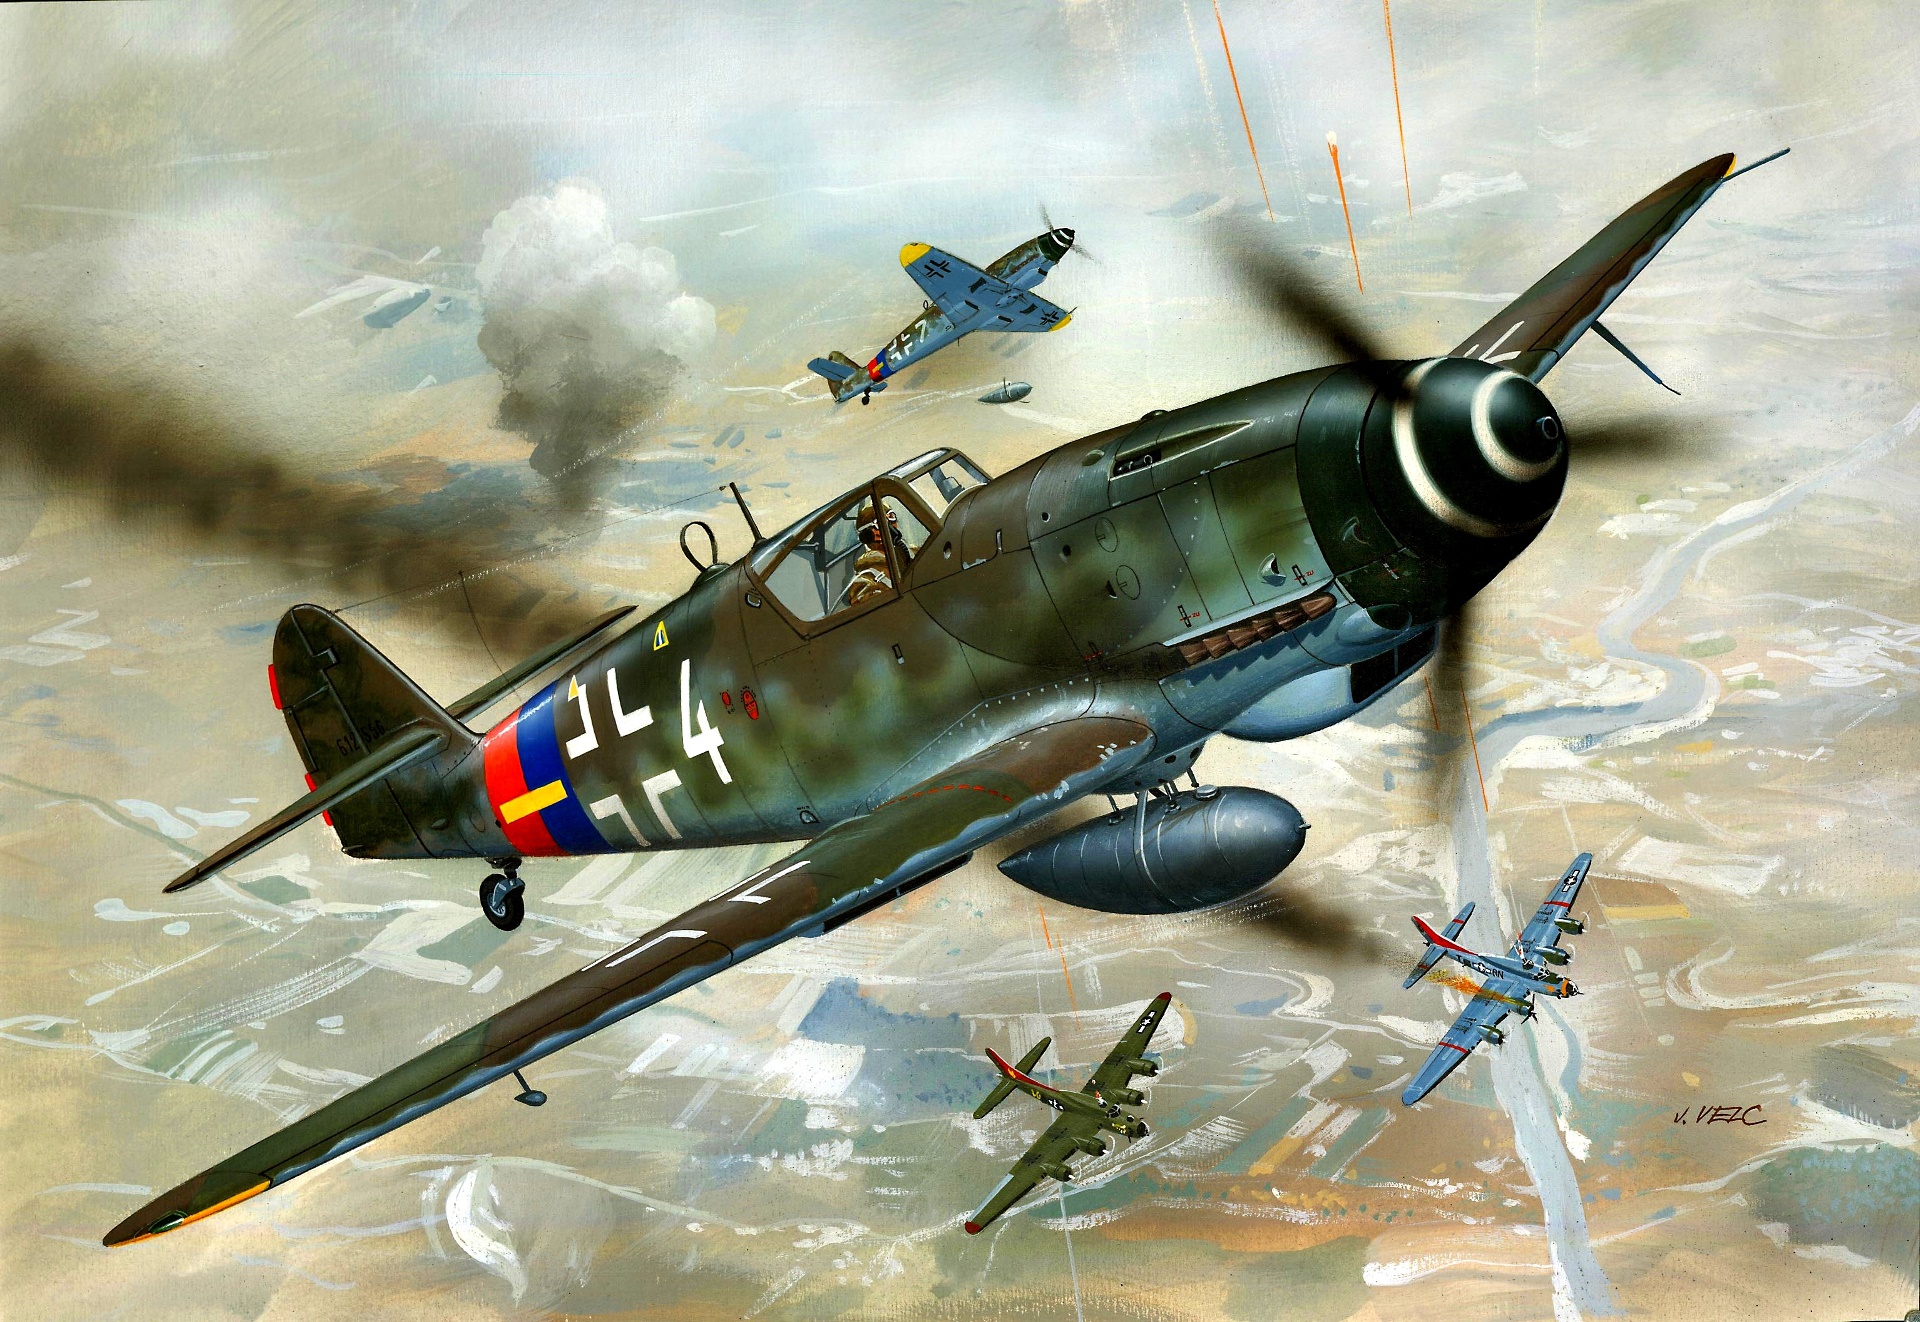 General 1920x1322 military war aircraft artwork military aircraft World War II German aircraft Messerschmitt Messerschmitt Bf 109